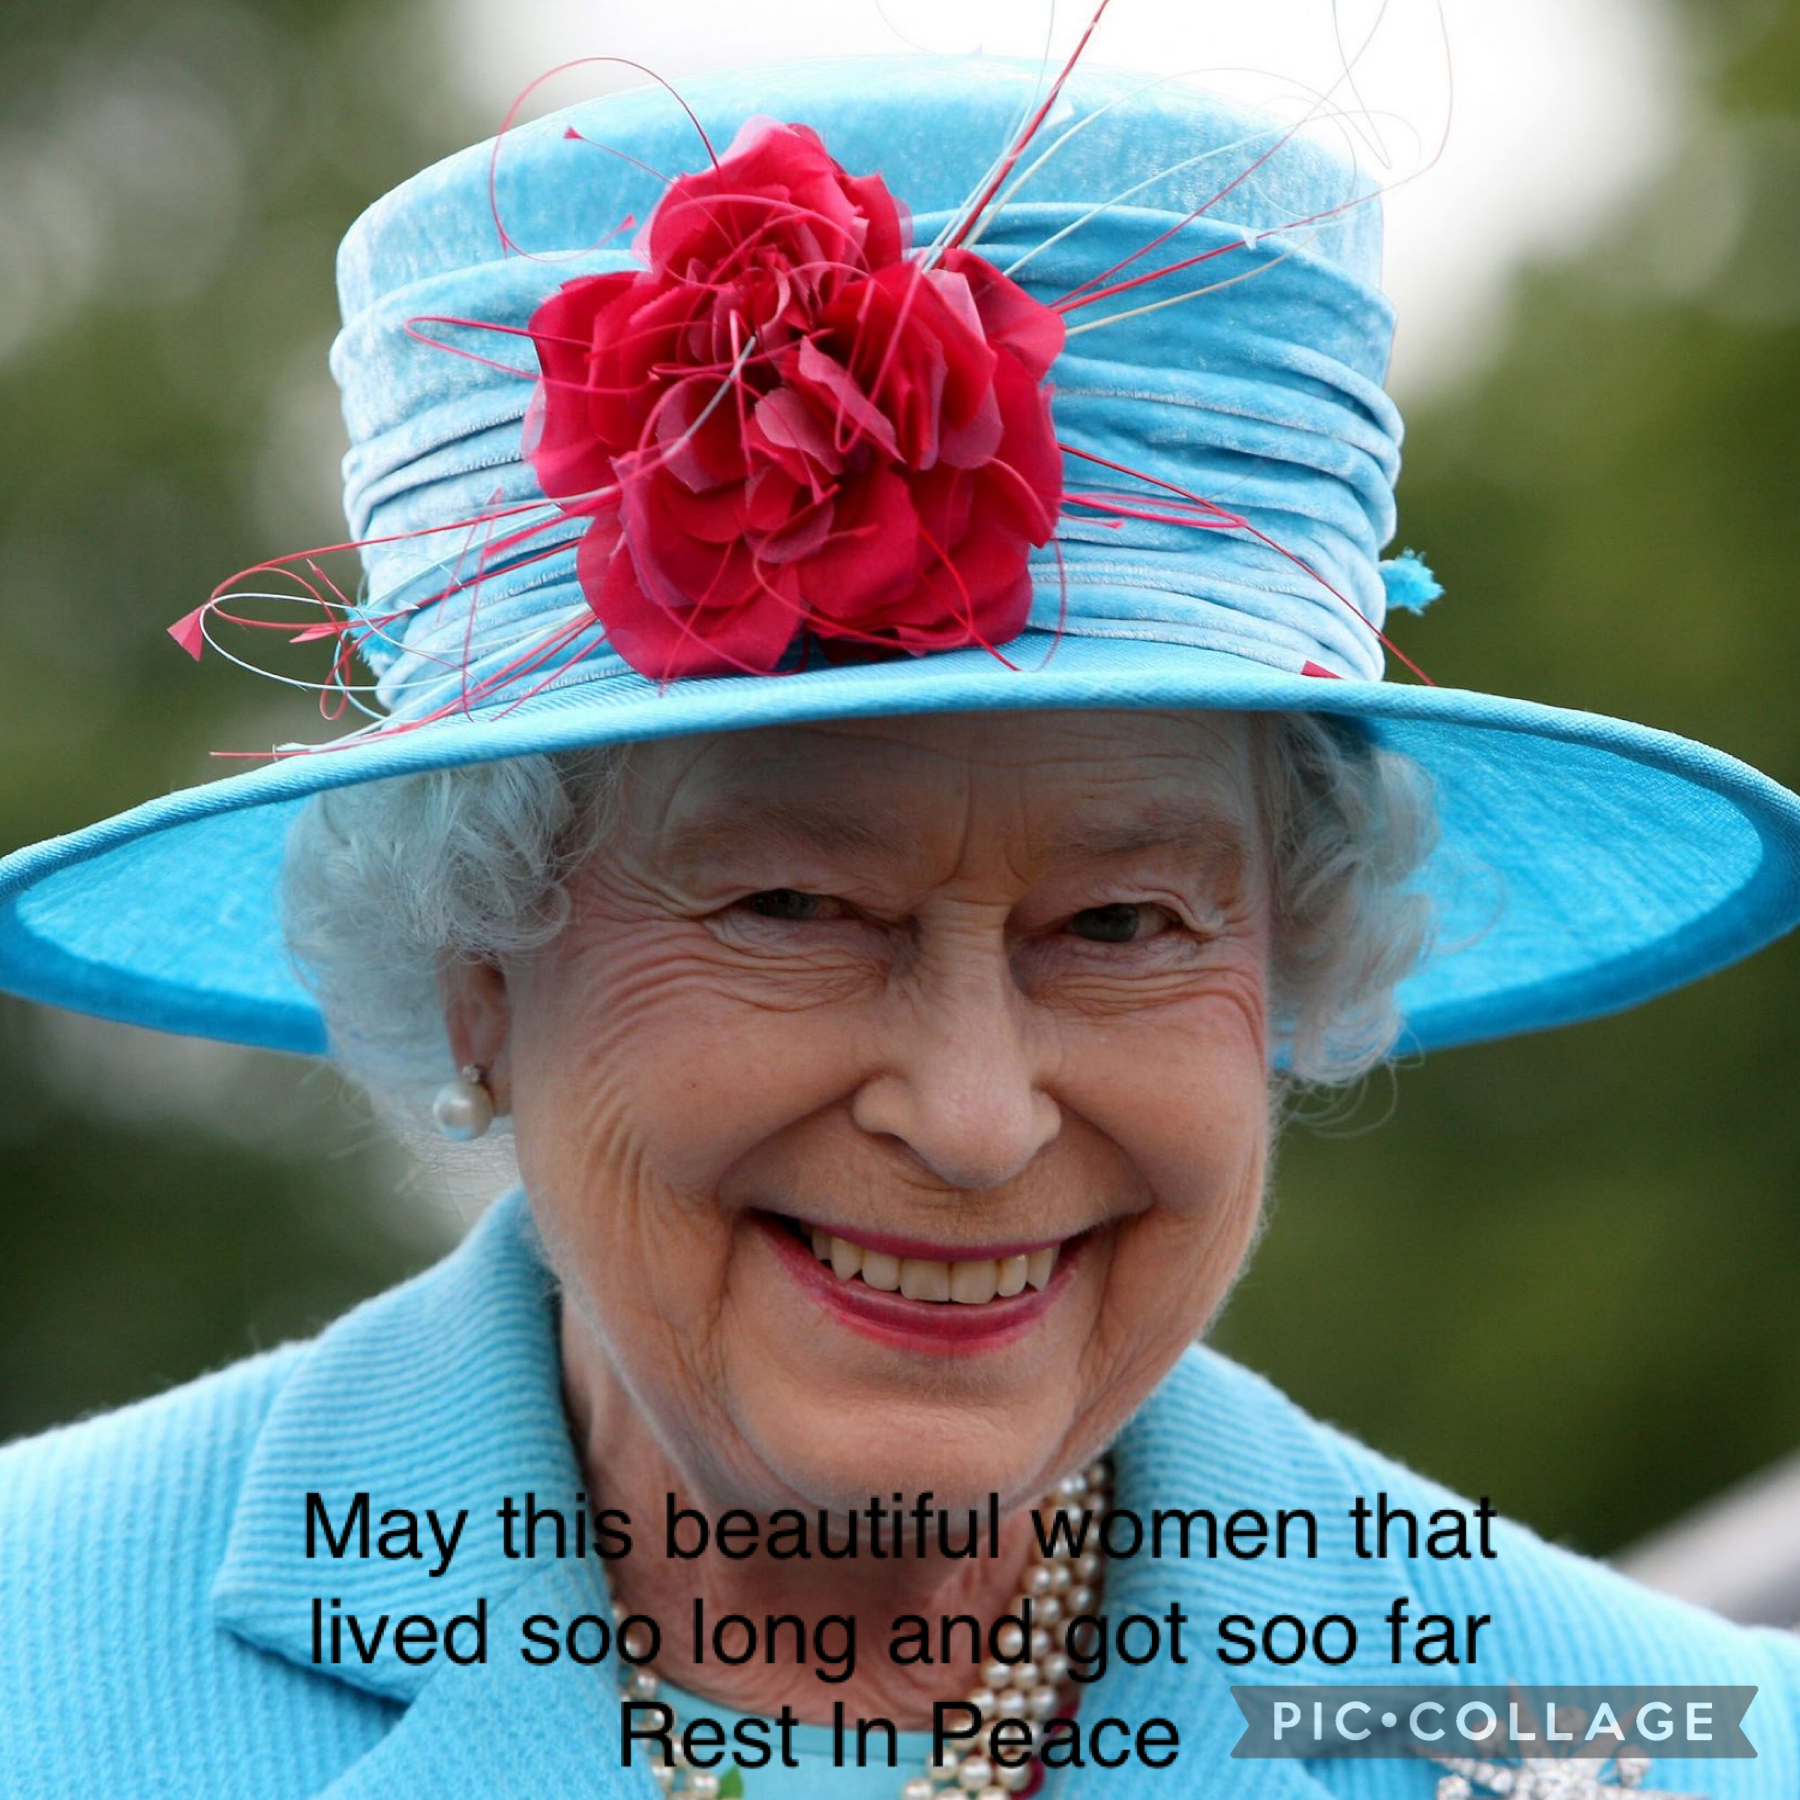 Rip queen Elizabeth 